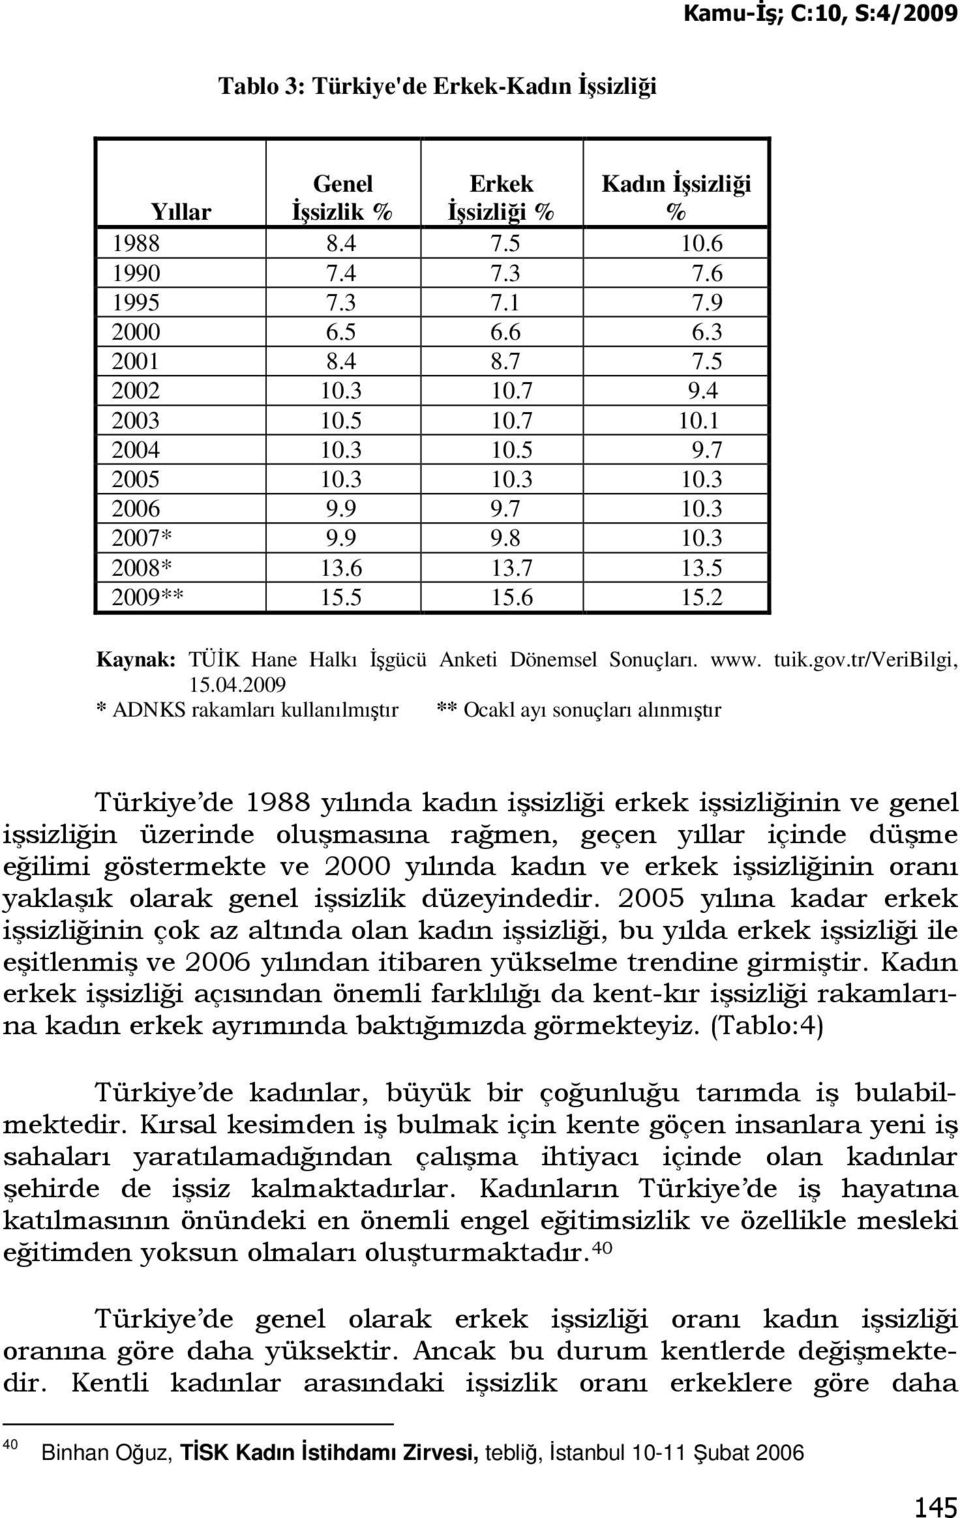 2 Kaynak: TÜĐK Hane Halkı Đşgücü Anketi Dönemsel Sonuçları. www. tuik.gov.tr/veribilgi, 15.04.